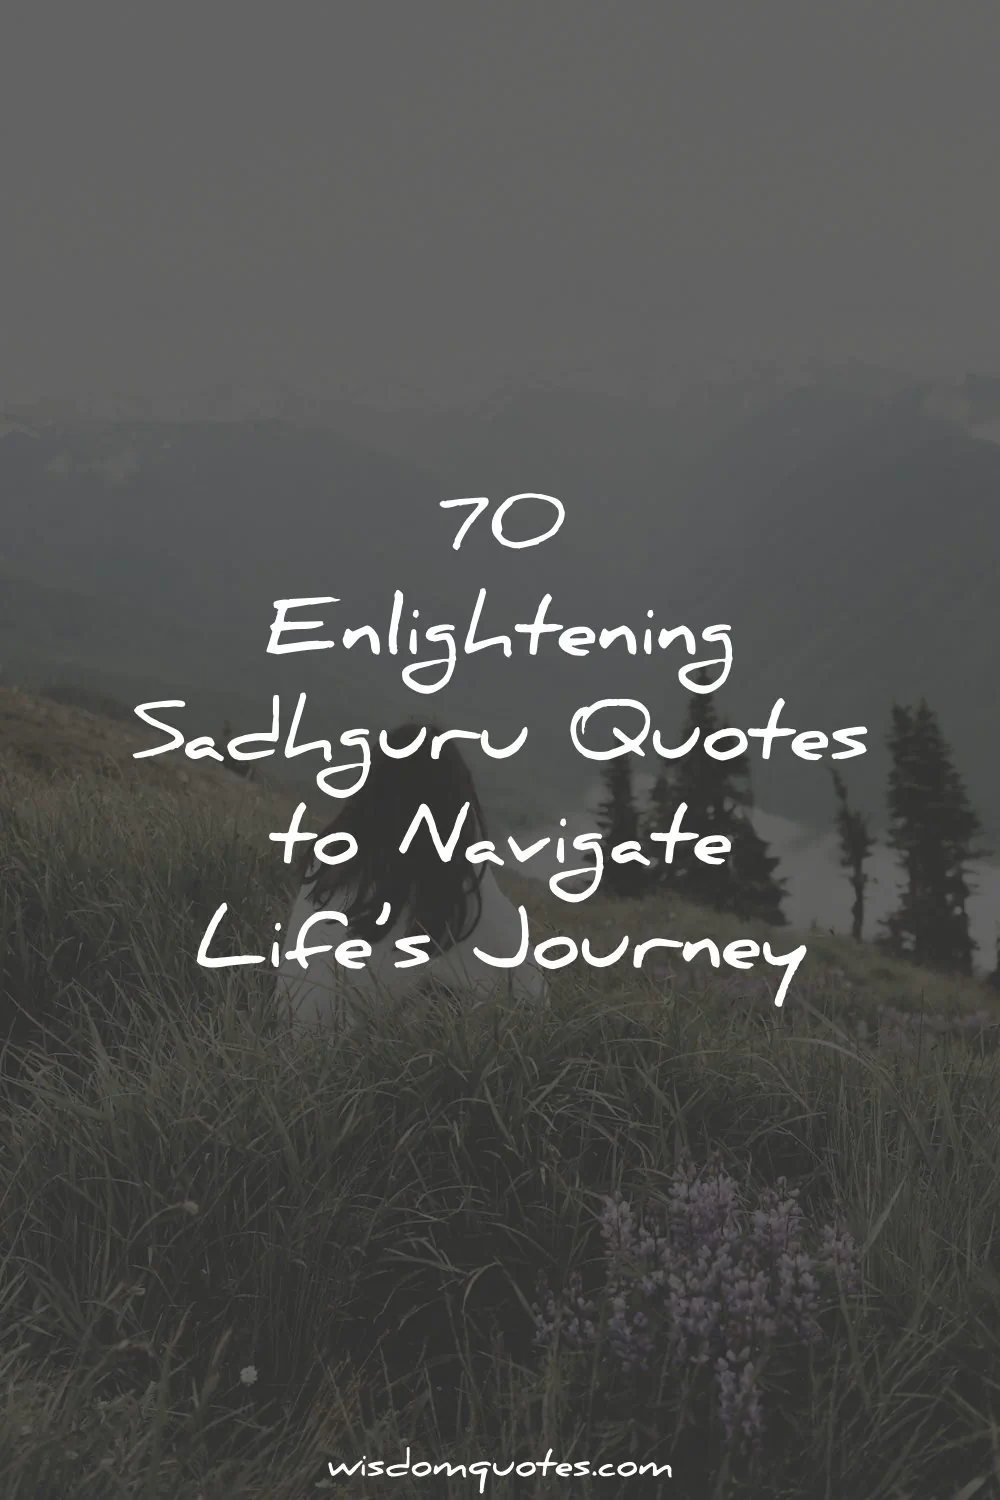 sadhguru quotes wisdom